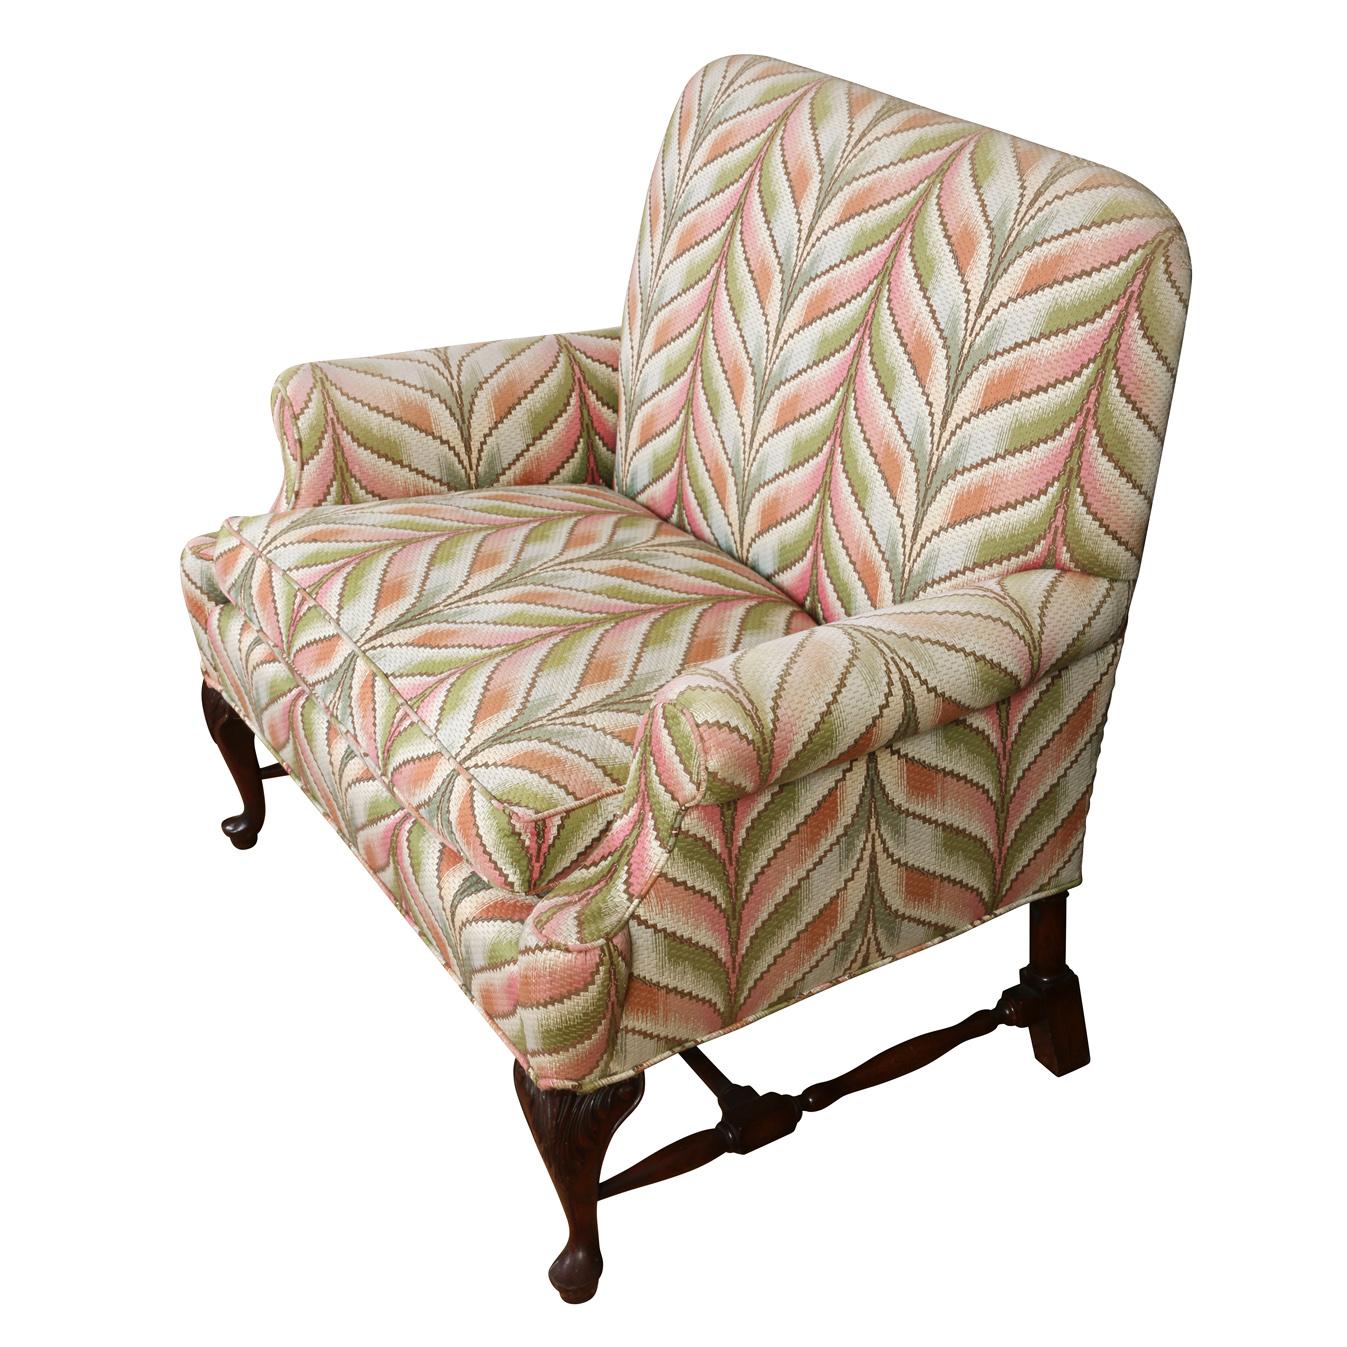 Ein Vintage-Sofa im George-II-Stil, gepolstert mit grünem und apricotfarbenem Ikat-Chevron-Motiv, mit Cabriole-Mahagonibeinen.